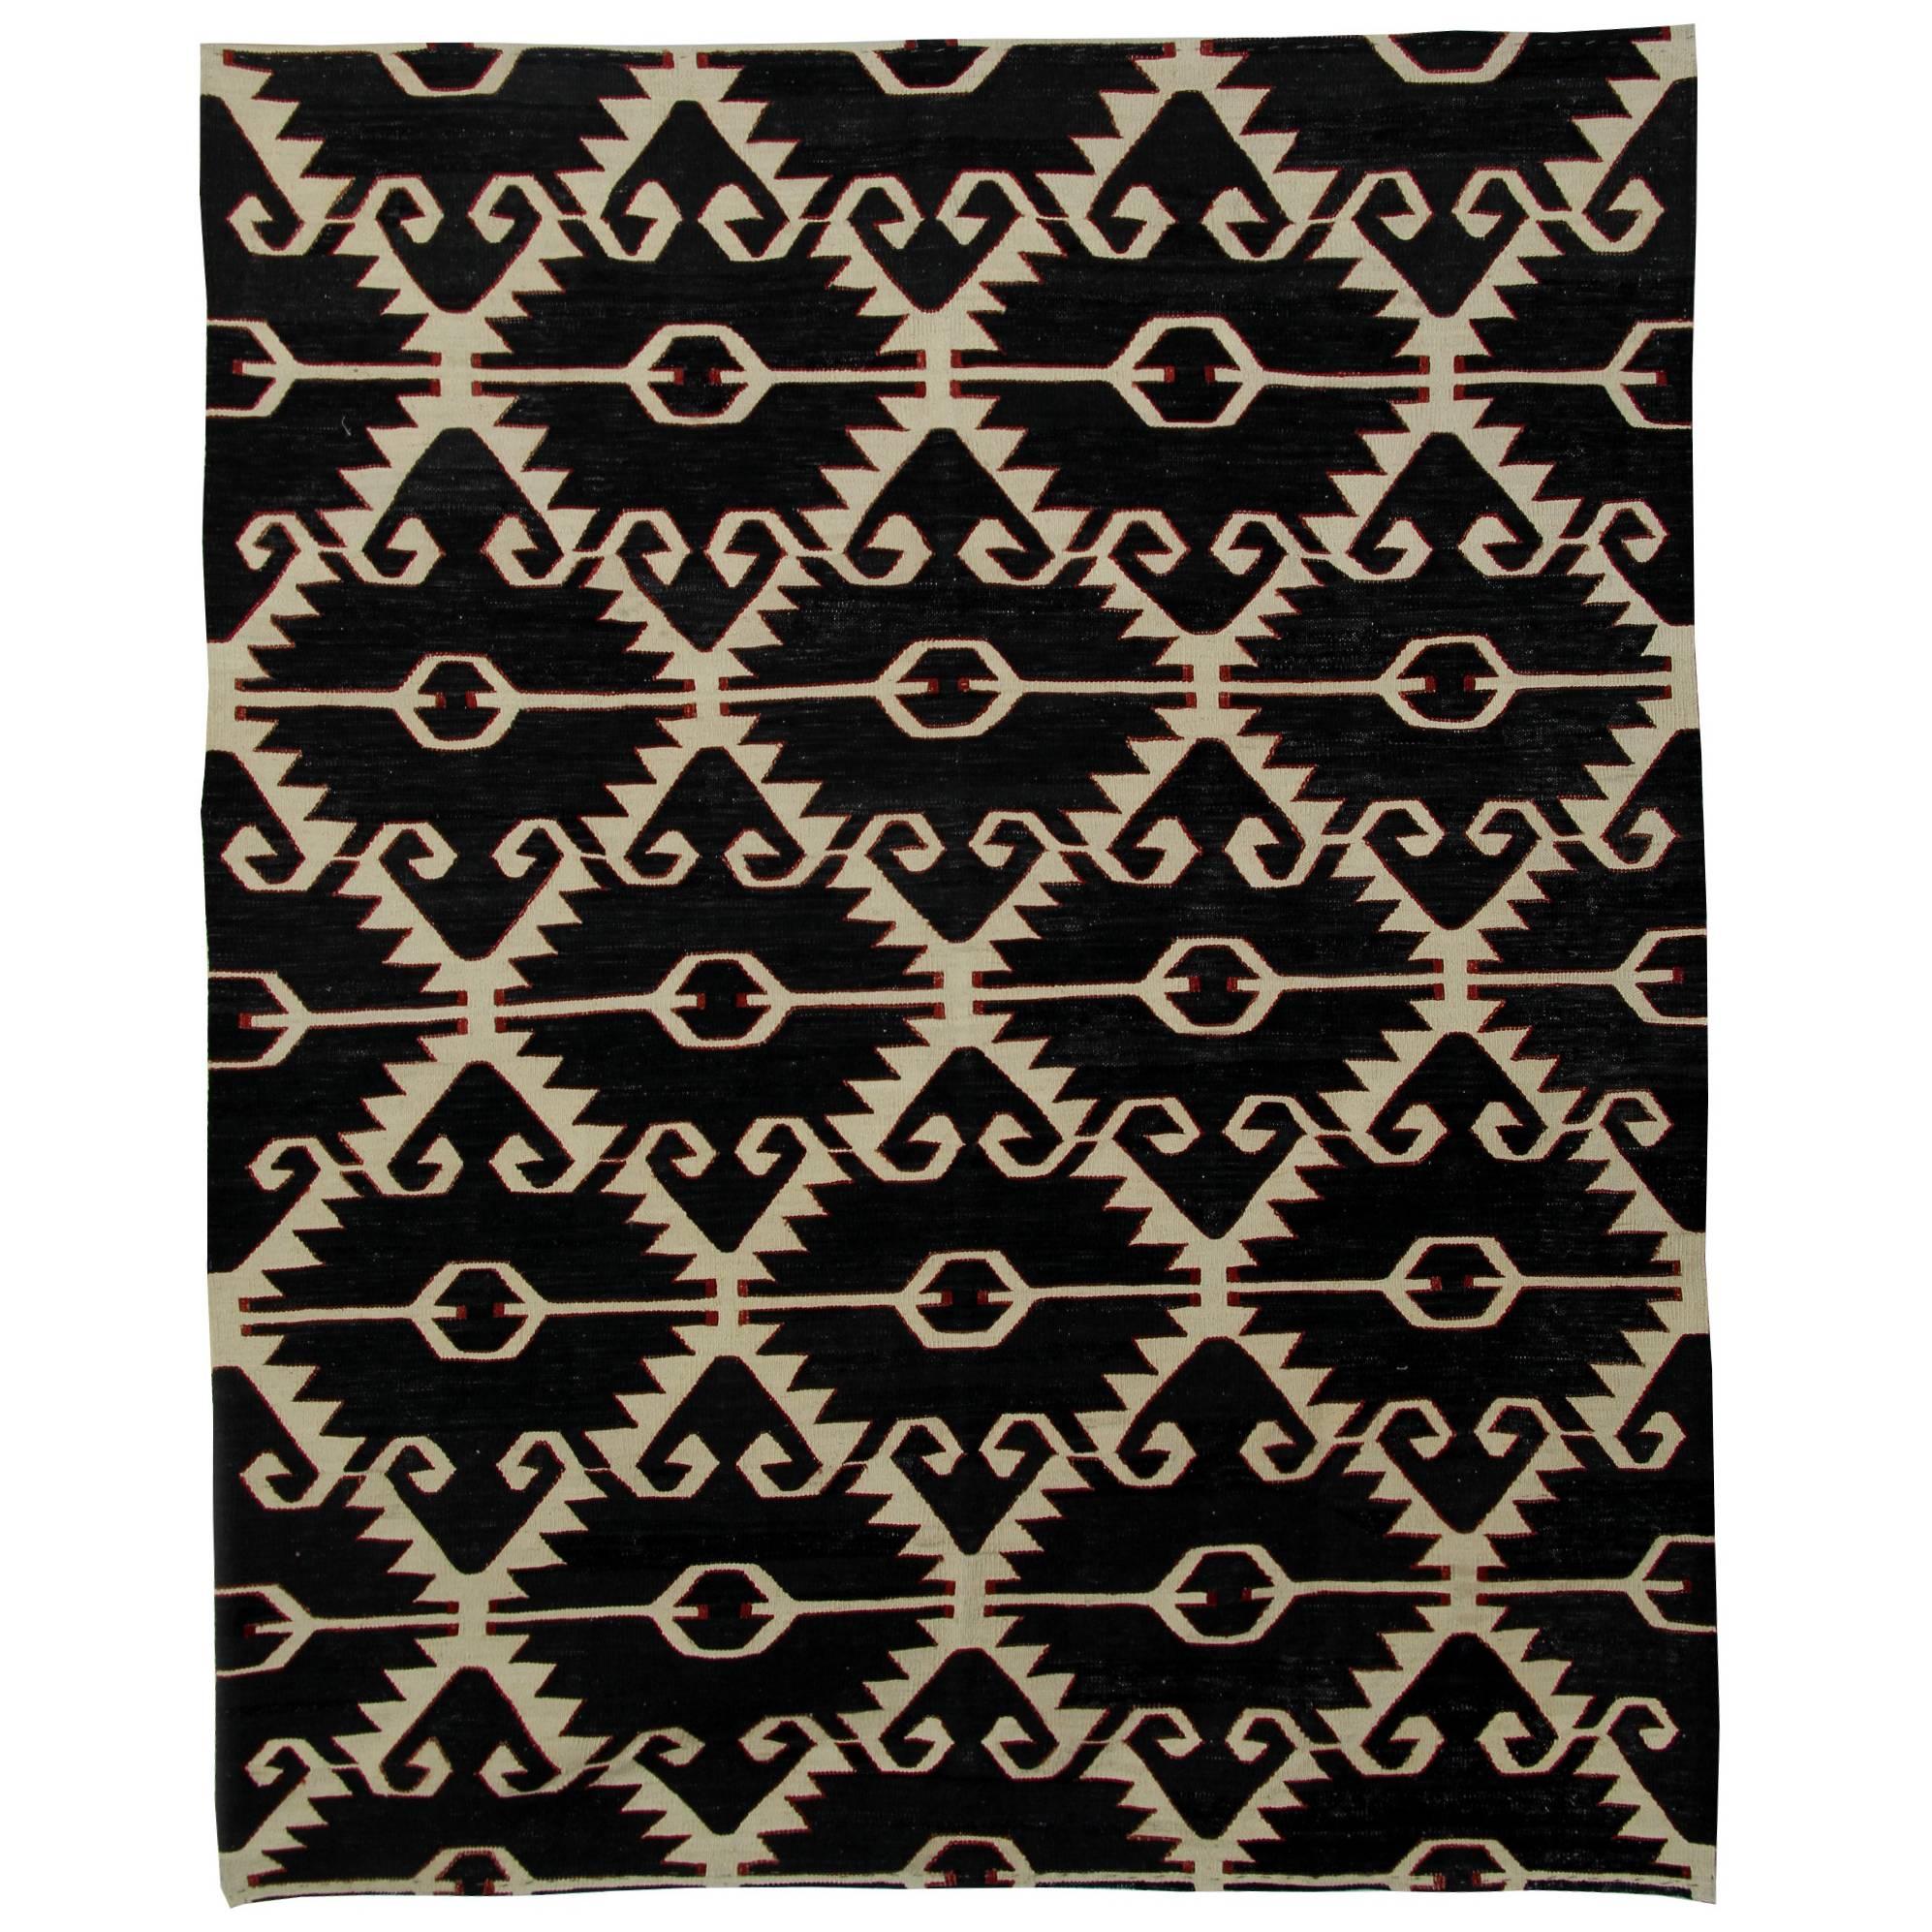 Afghan Rugs, Kilim Rugs, Modern Rugs, Carpet from Afghanistan